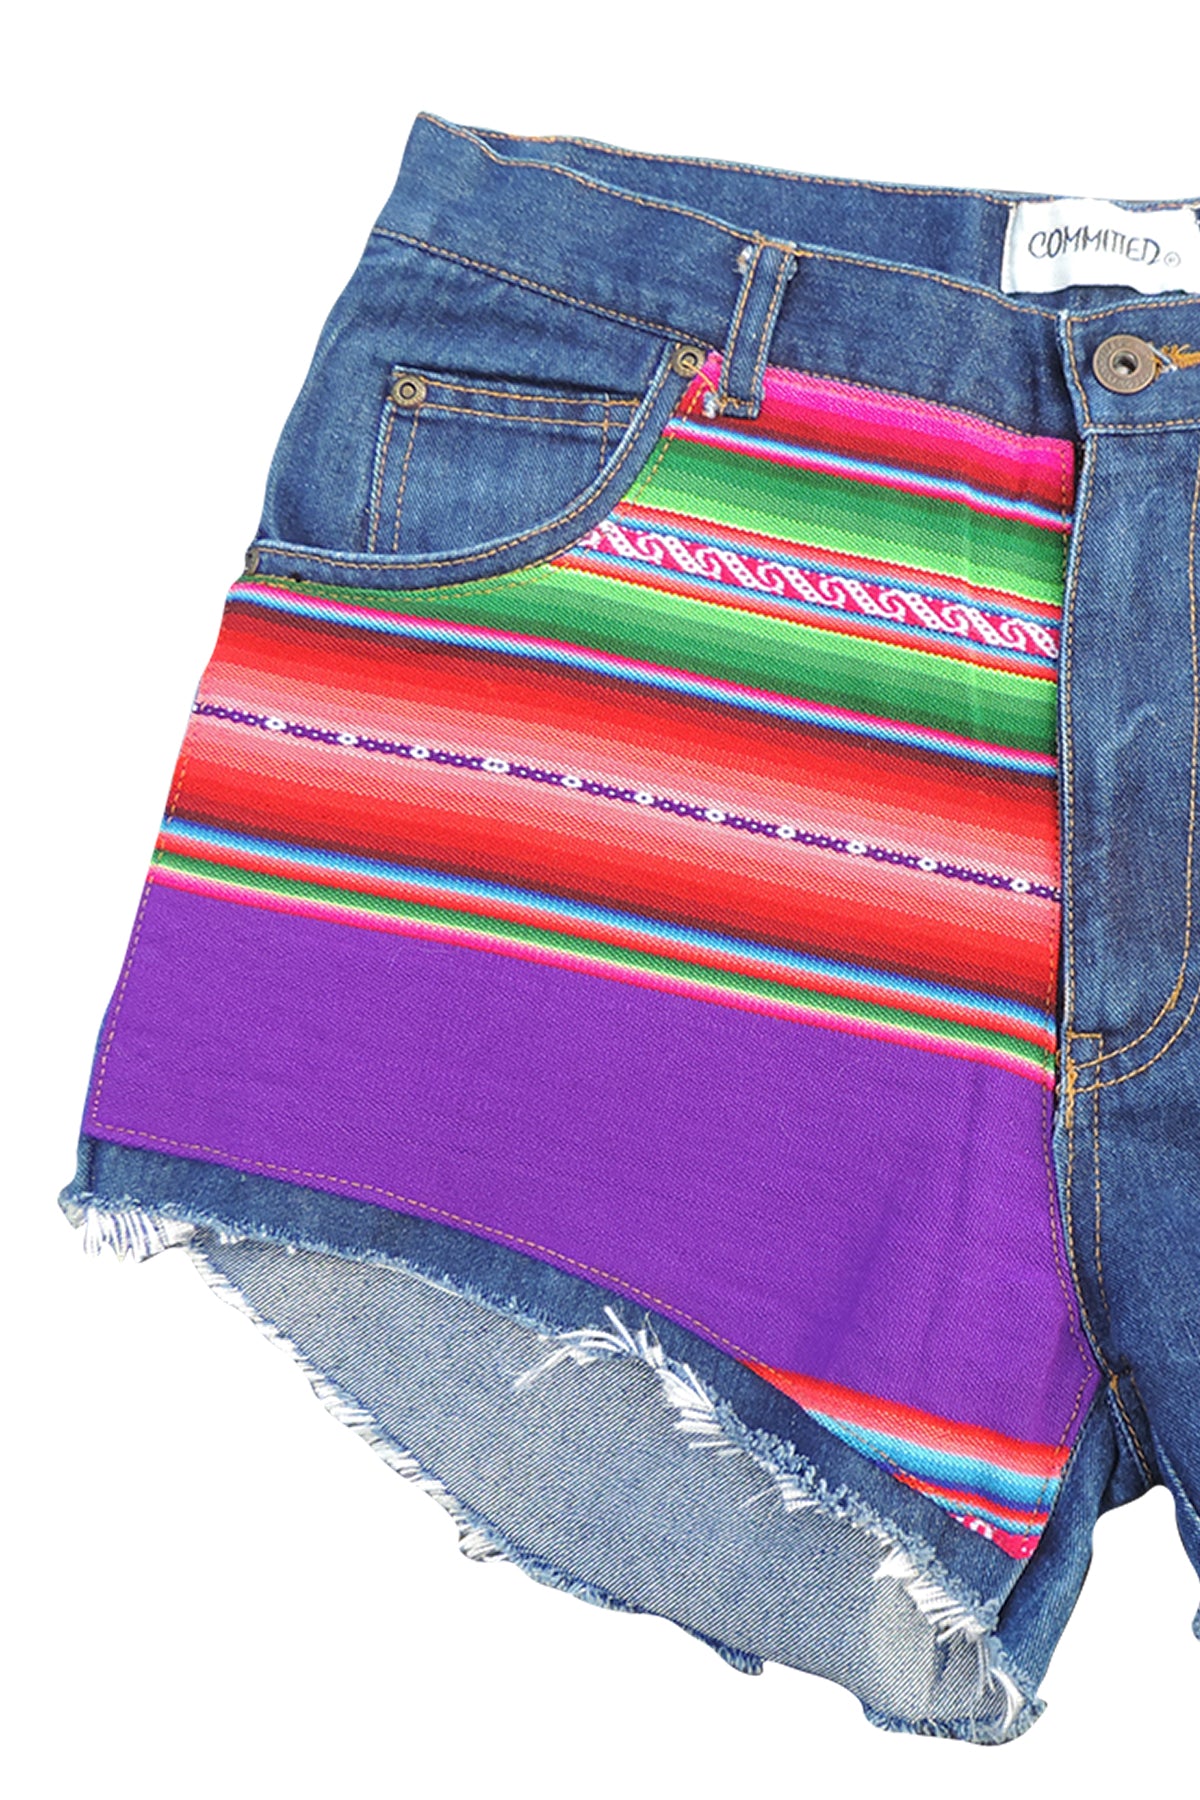 BoBo- Upcycled  Denim Shorts- Bolivian Textile- Commited Sz 11/12 31"